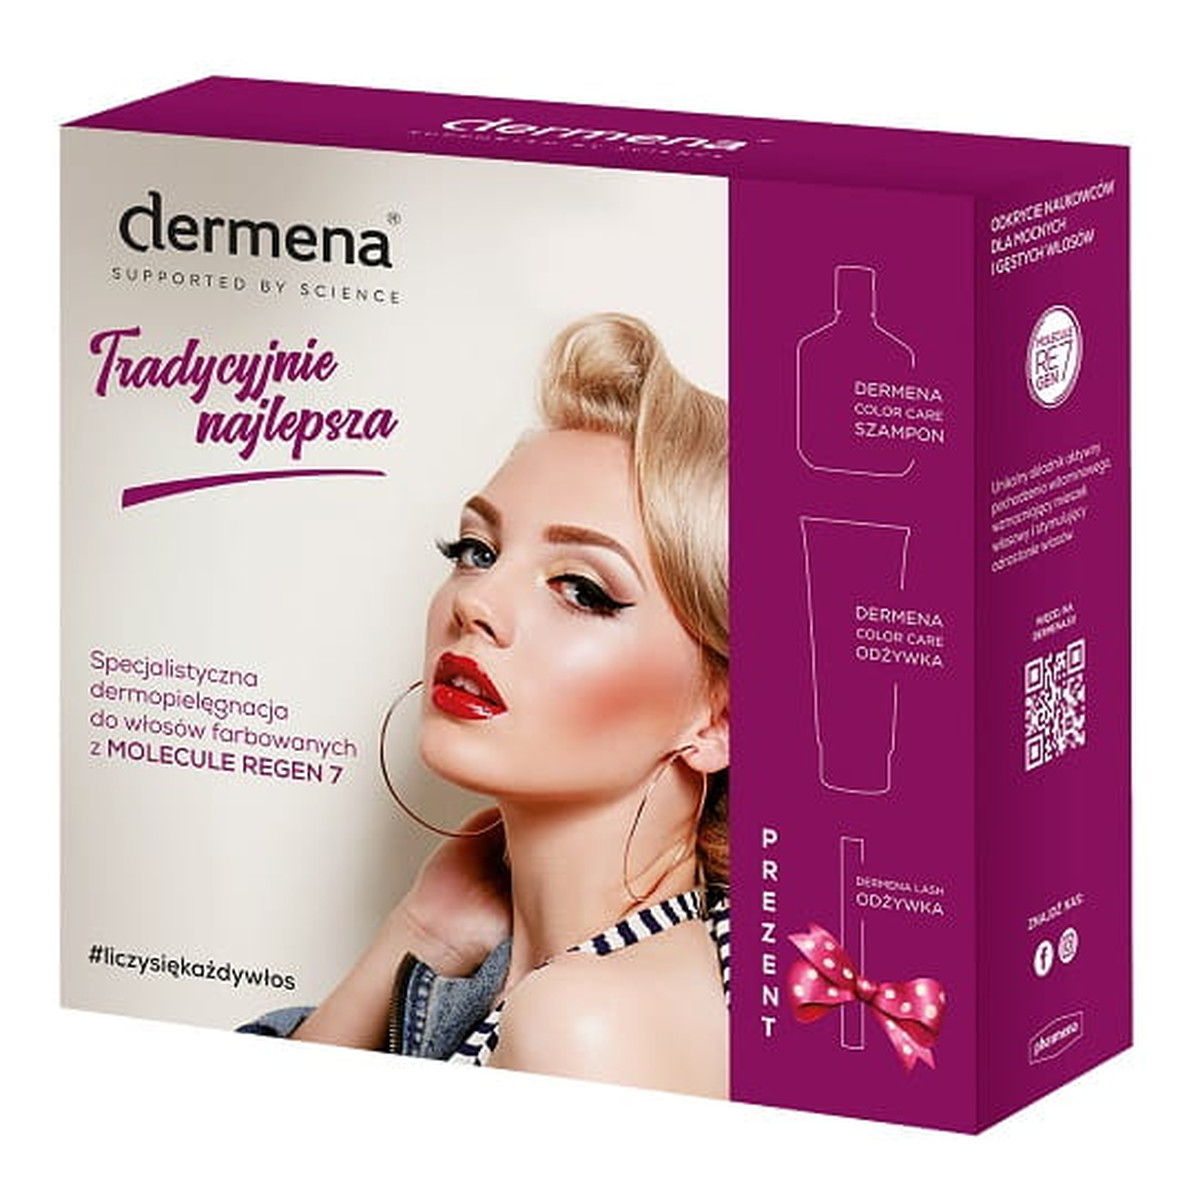 Dermena Hair Care Zestaw prezentowy Color Care (szampon 200ml+odżywka 200ml+odżywka d/rzęs )